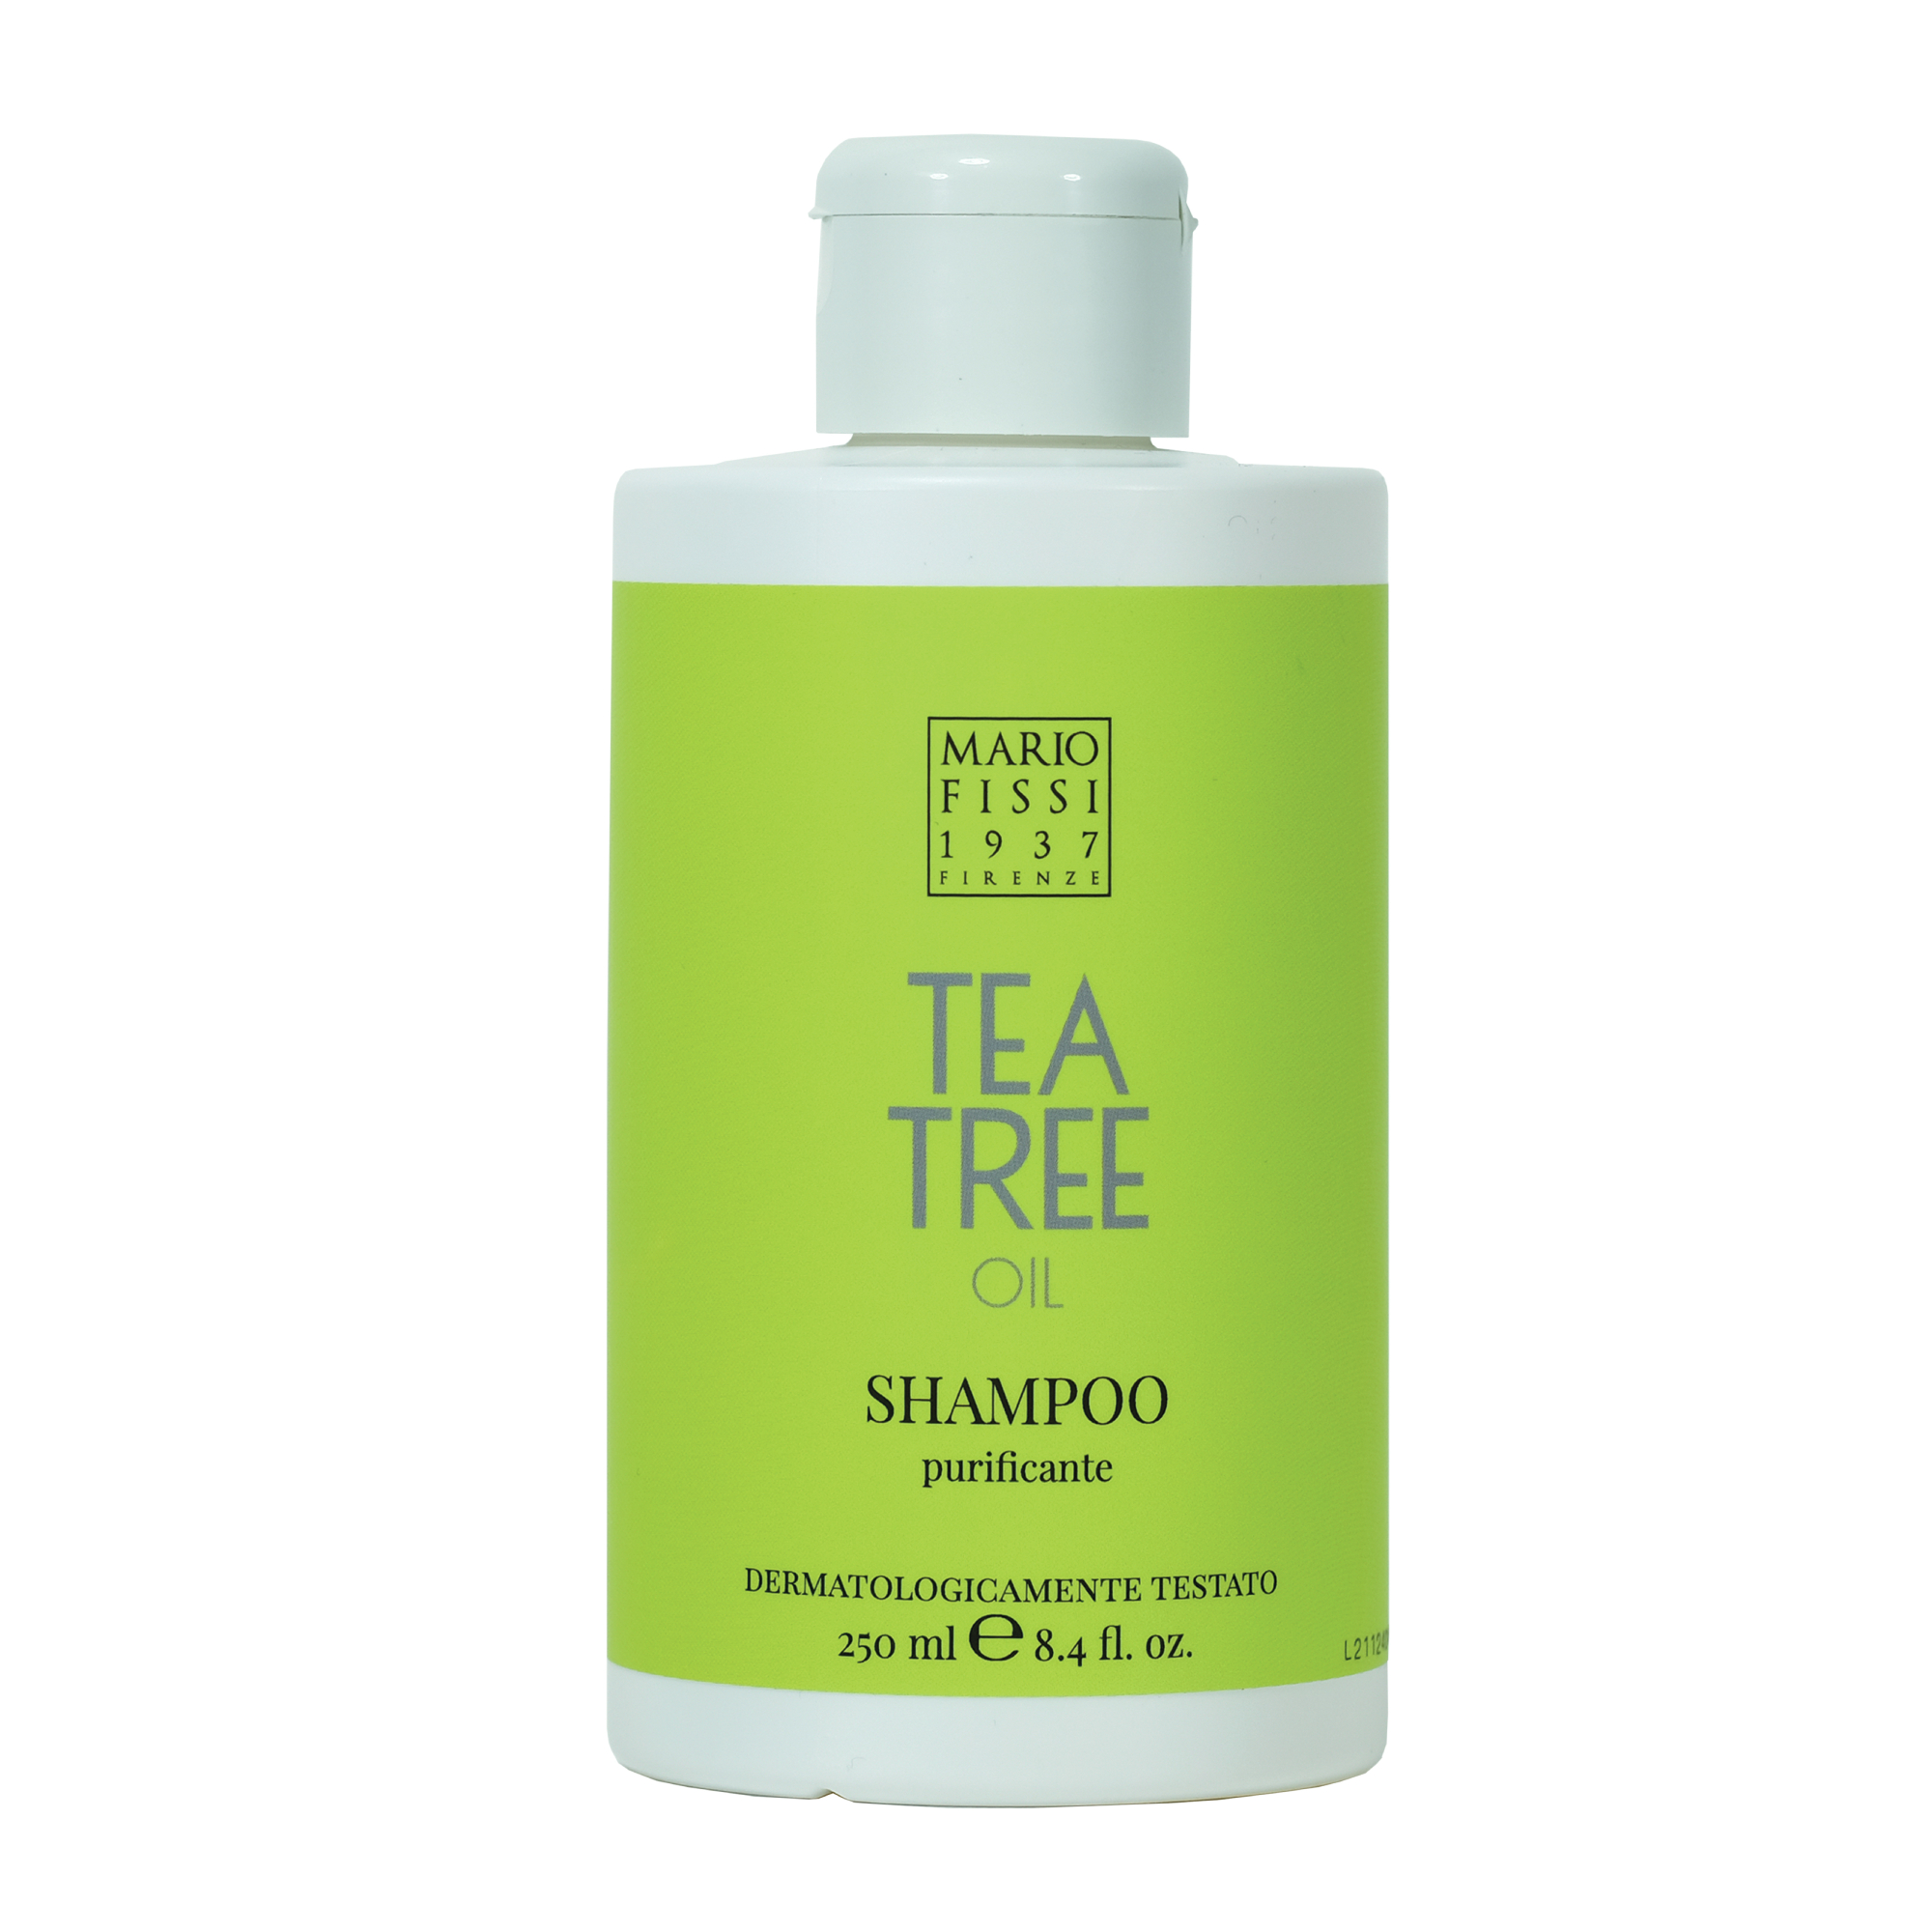 Шампунь для волос Mario Fissi 1937 Funzioniale Tea Tree Oil Очищающий С маслом Чайного Дерева 250 мл дезодорант спрей для ног и обуви с маслом чайного дерева 100мл